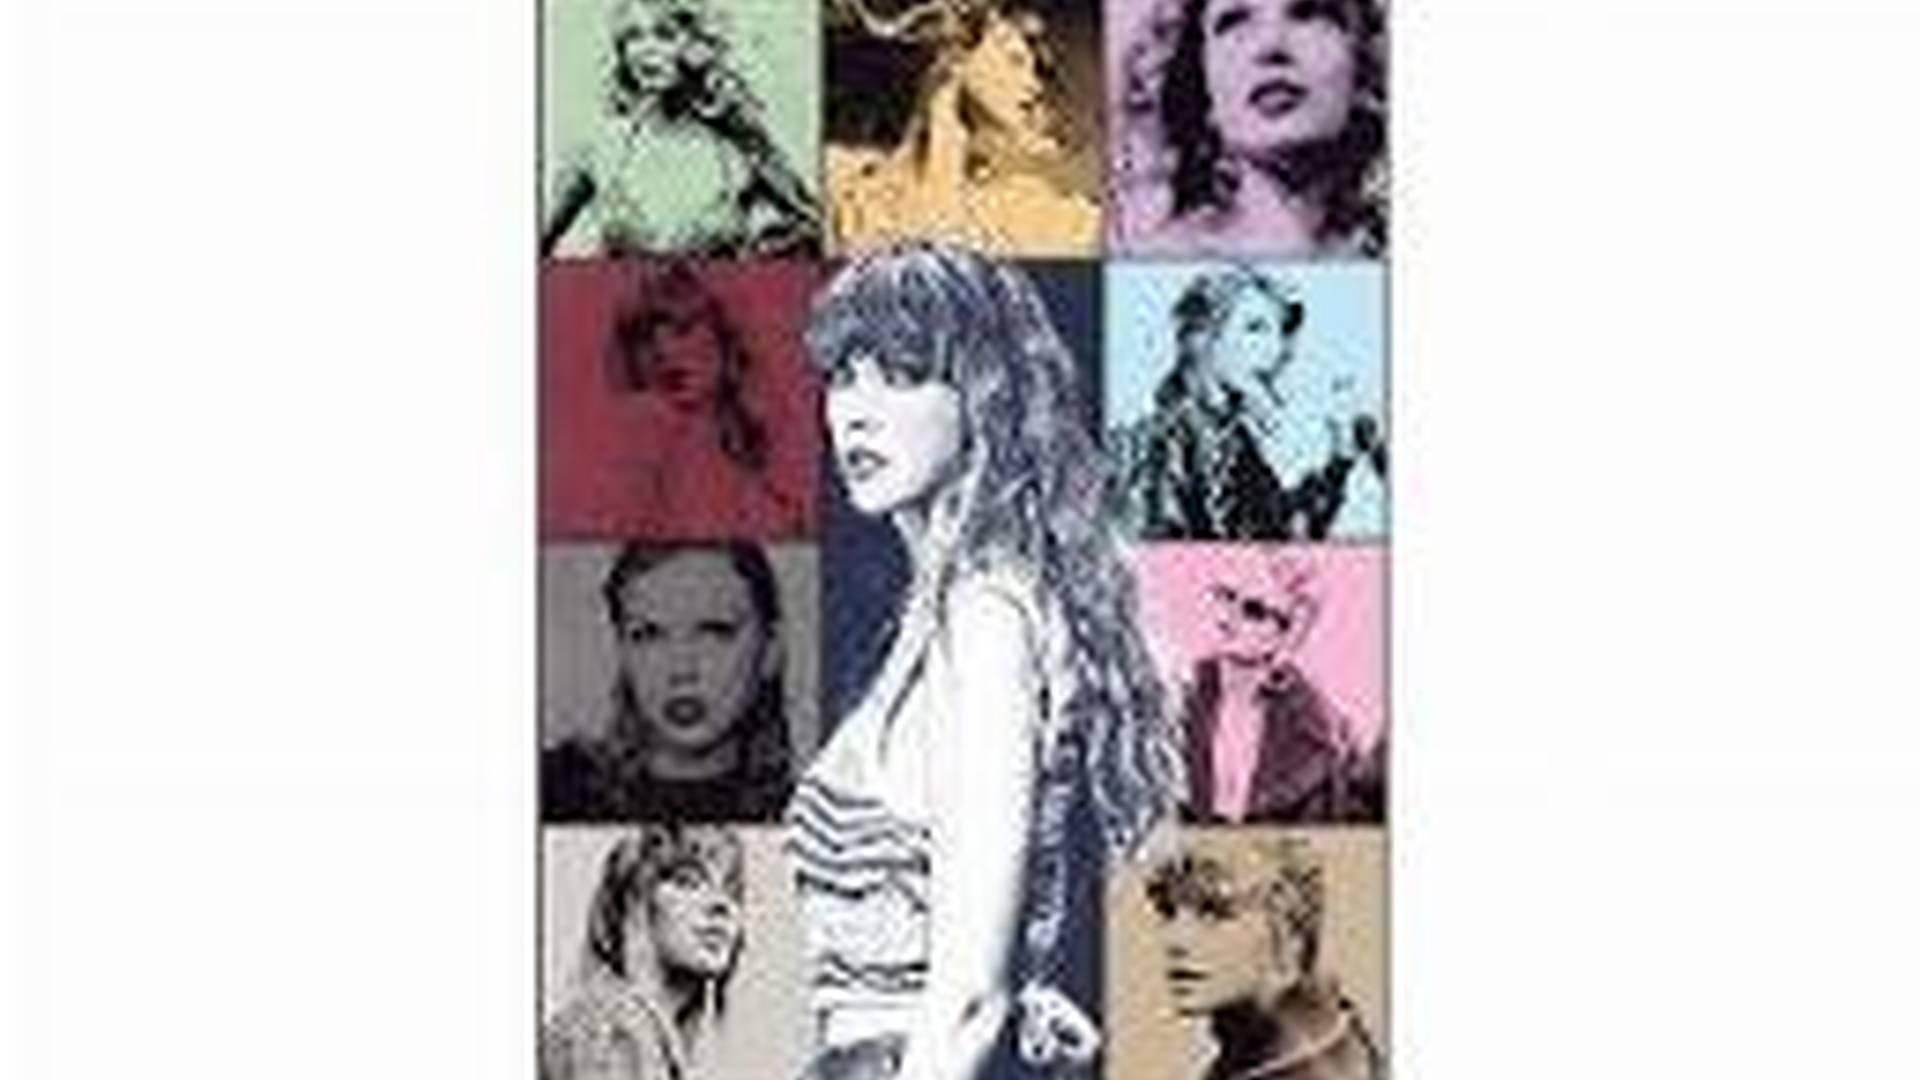 Taylor Swift | The Eras Tour photo